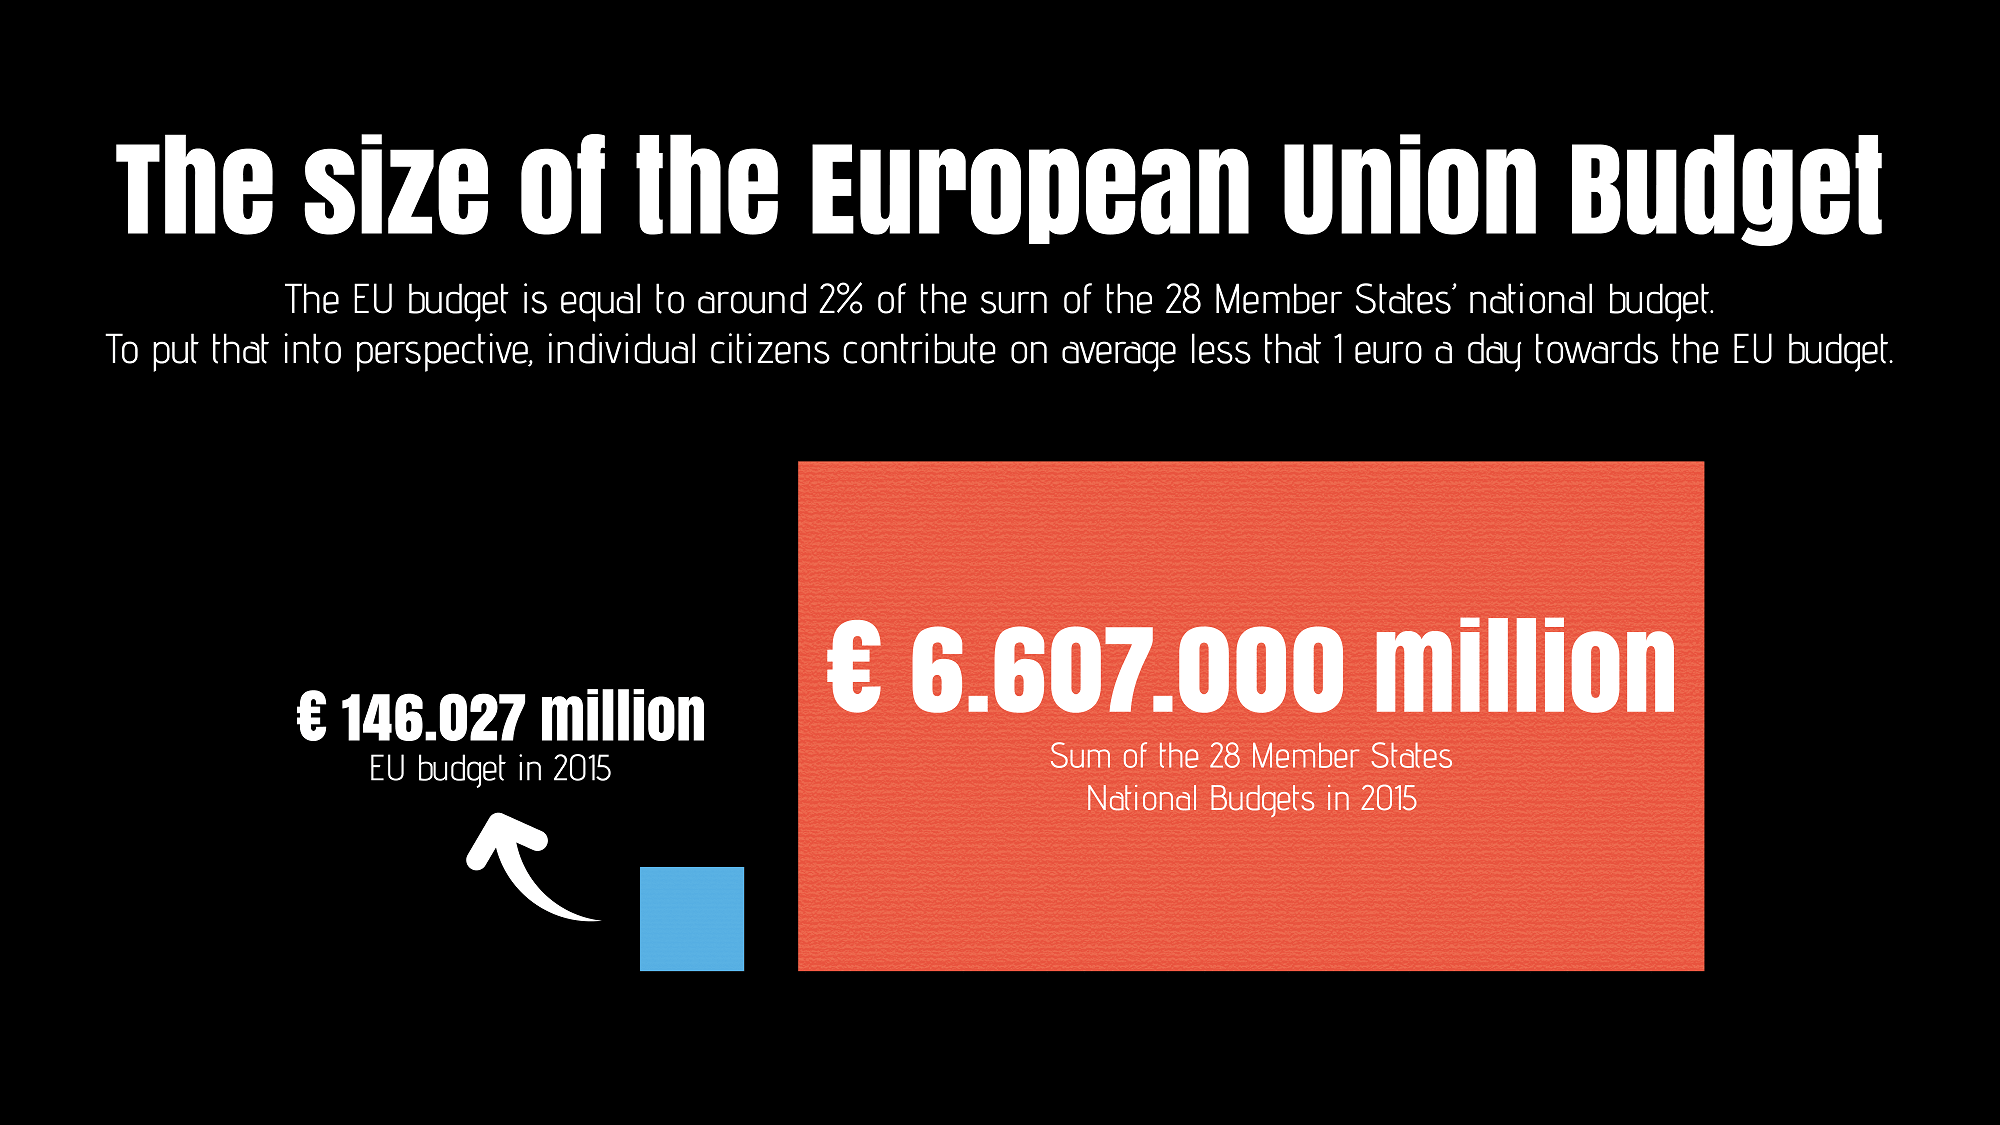 eu budget size infographic